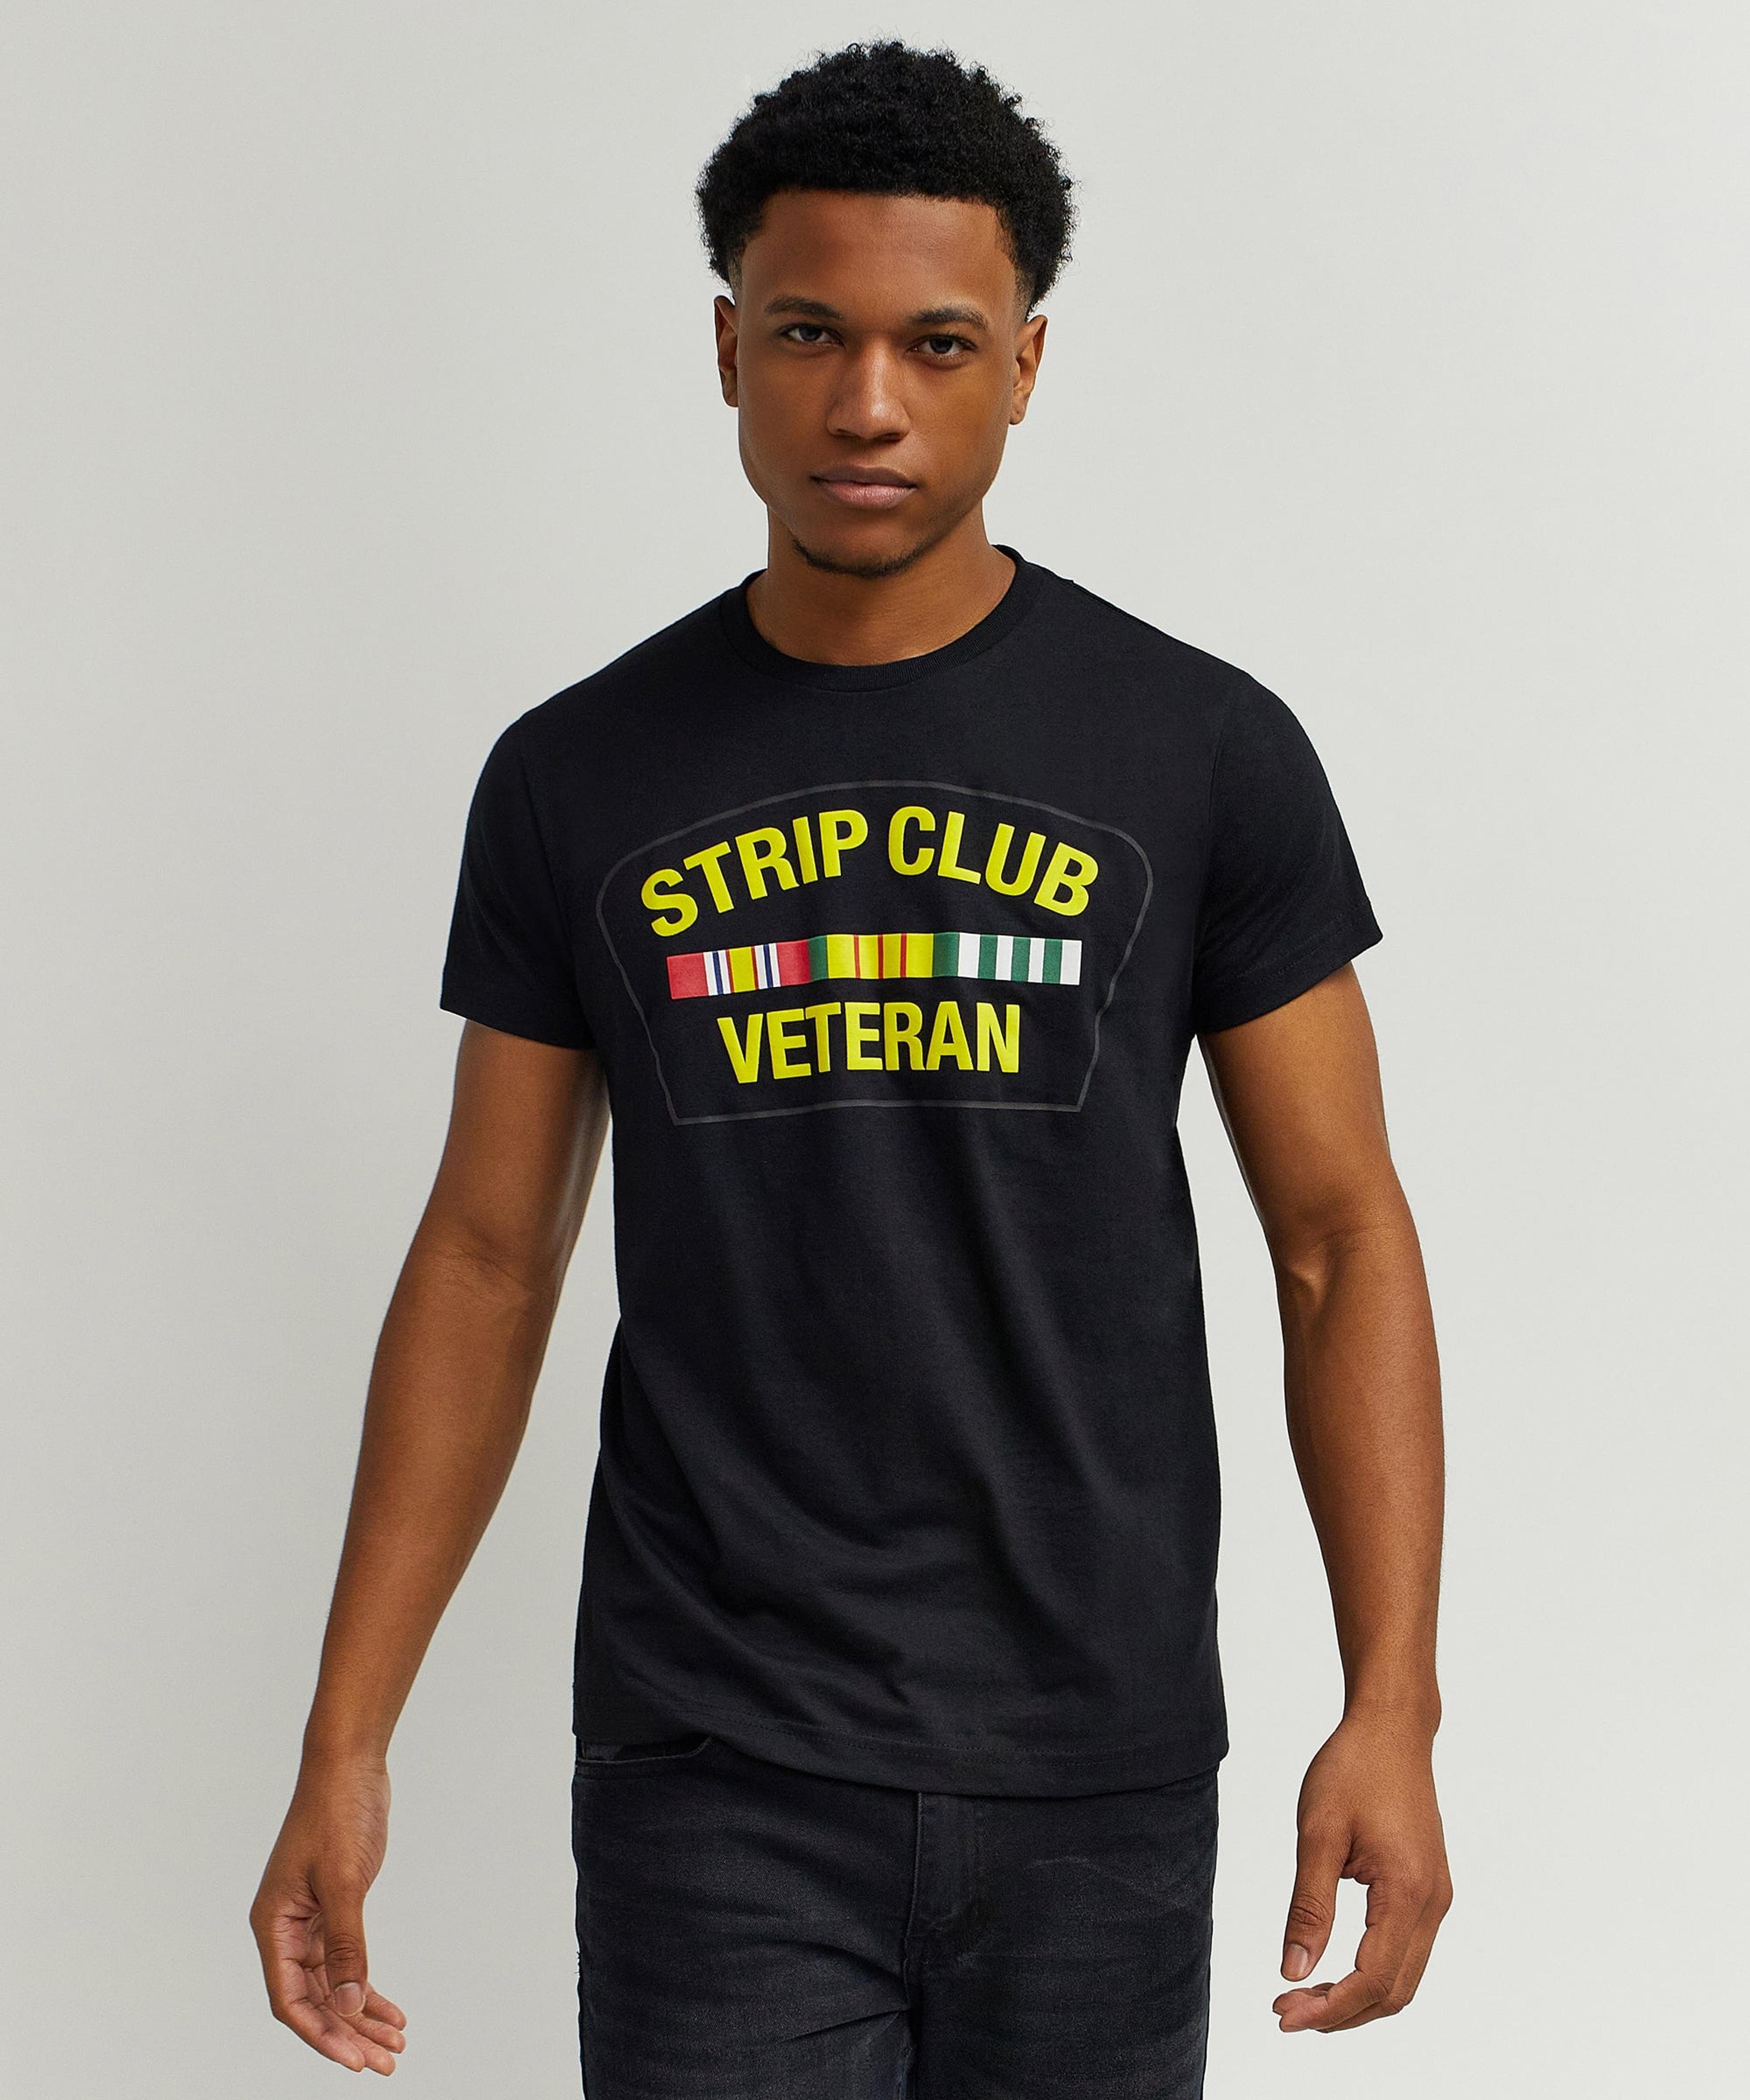 Alternate View 2 of Strip Club Veteran Short Sleeve Tee - Black